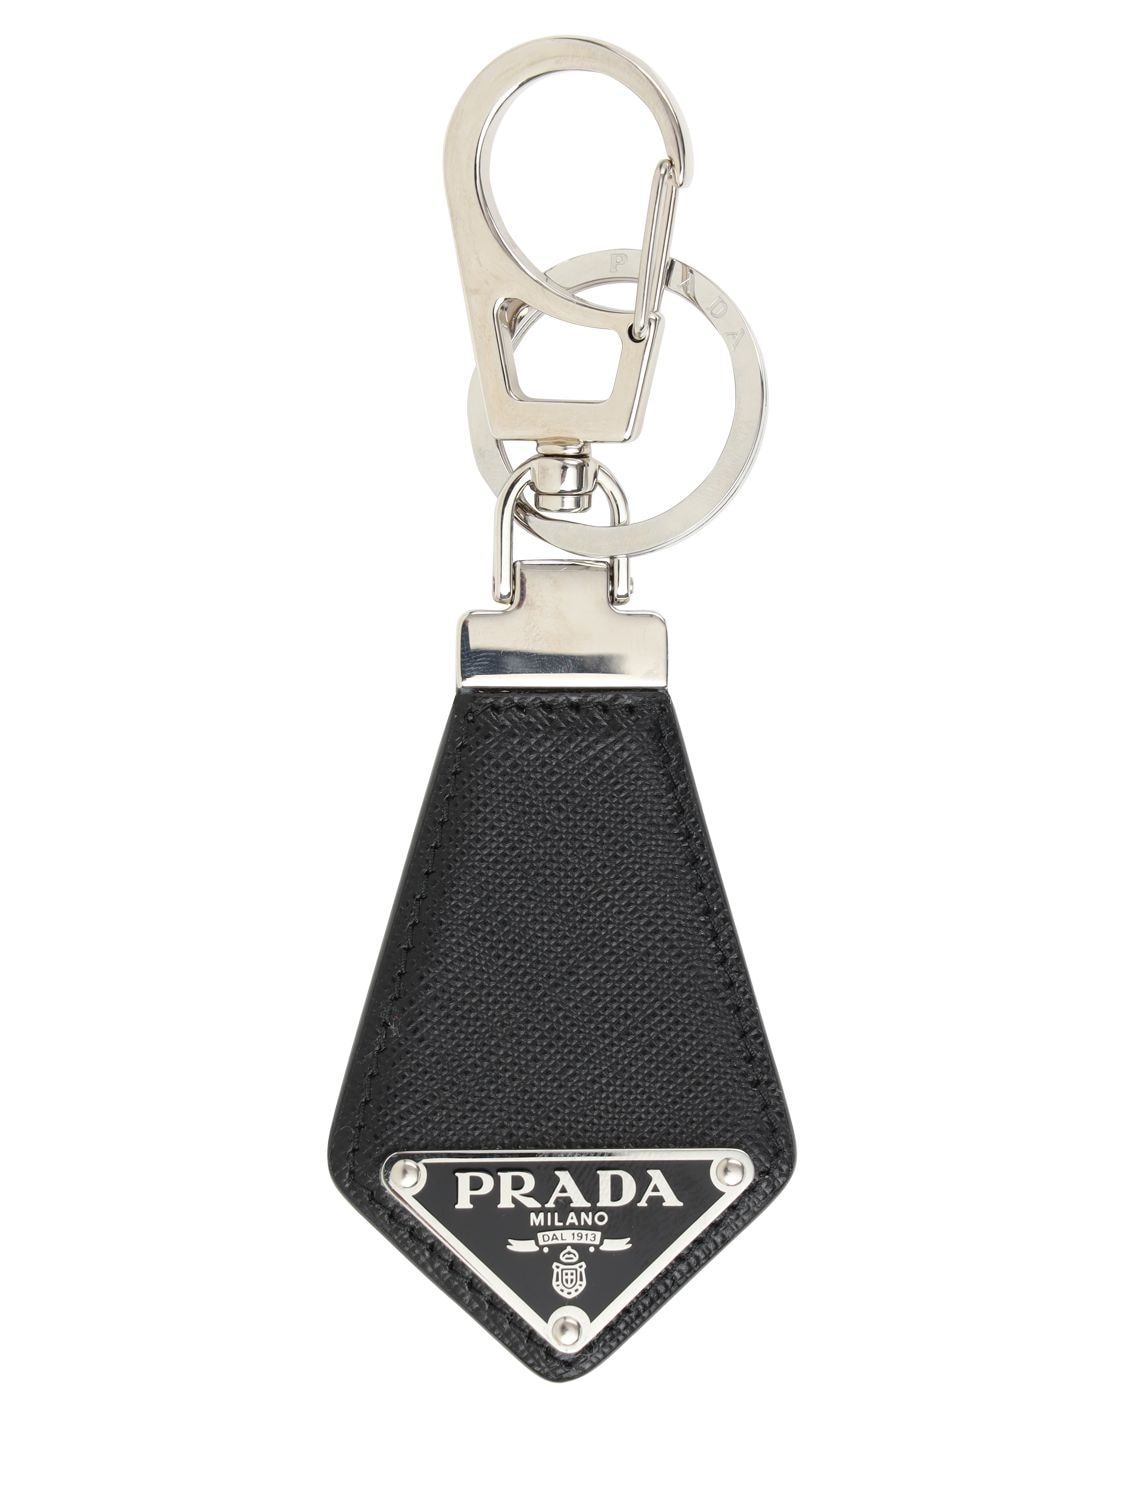 PRADA Logo Saffiano Leather Key Chain